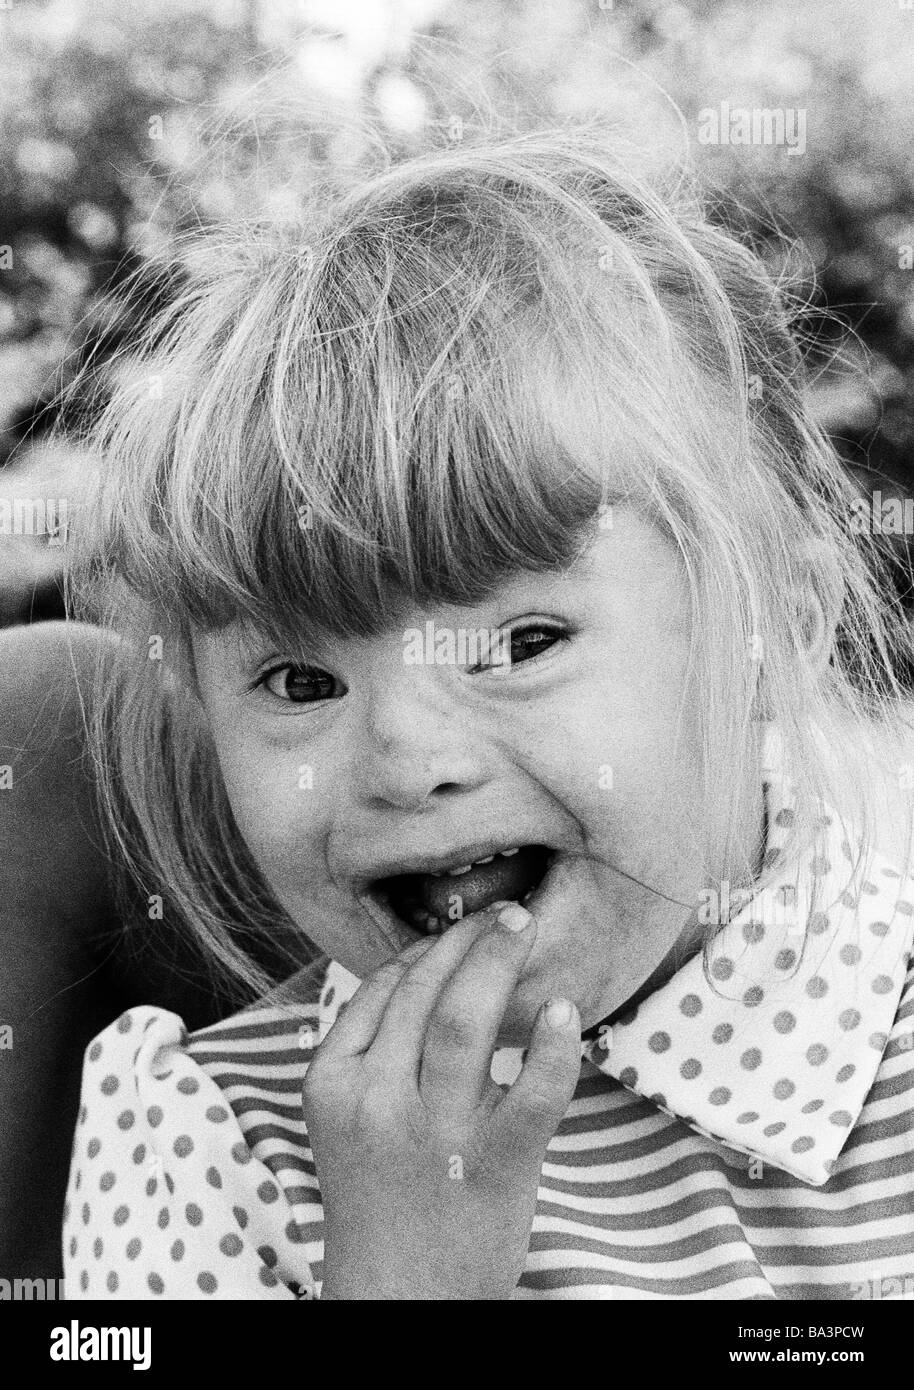 Negli anni settanta, foto in bianco e nero, persone di handicap fisici, ragazza con la sindrome di Down, ansioso, ampia bocca aperta, ritratto, dai 6 ai 10 anni Foto Stock